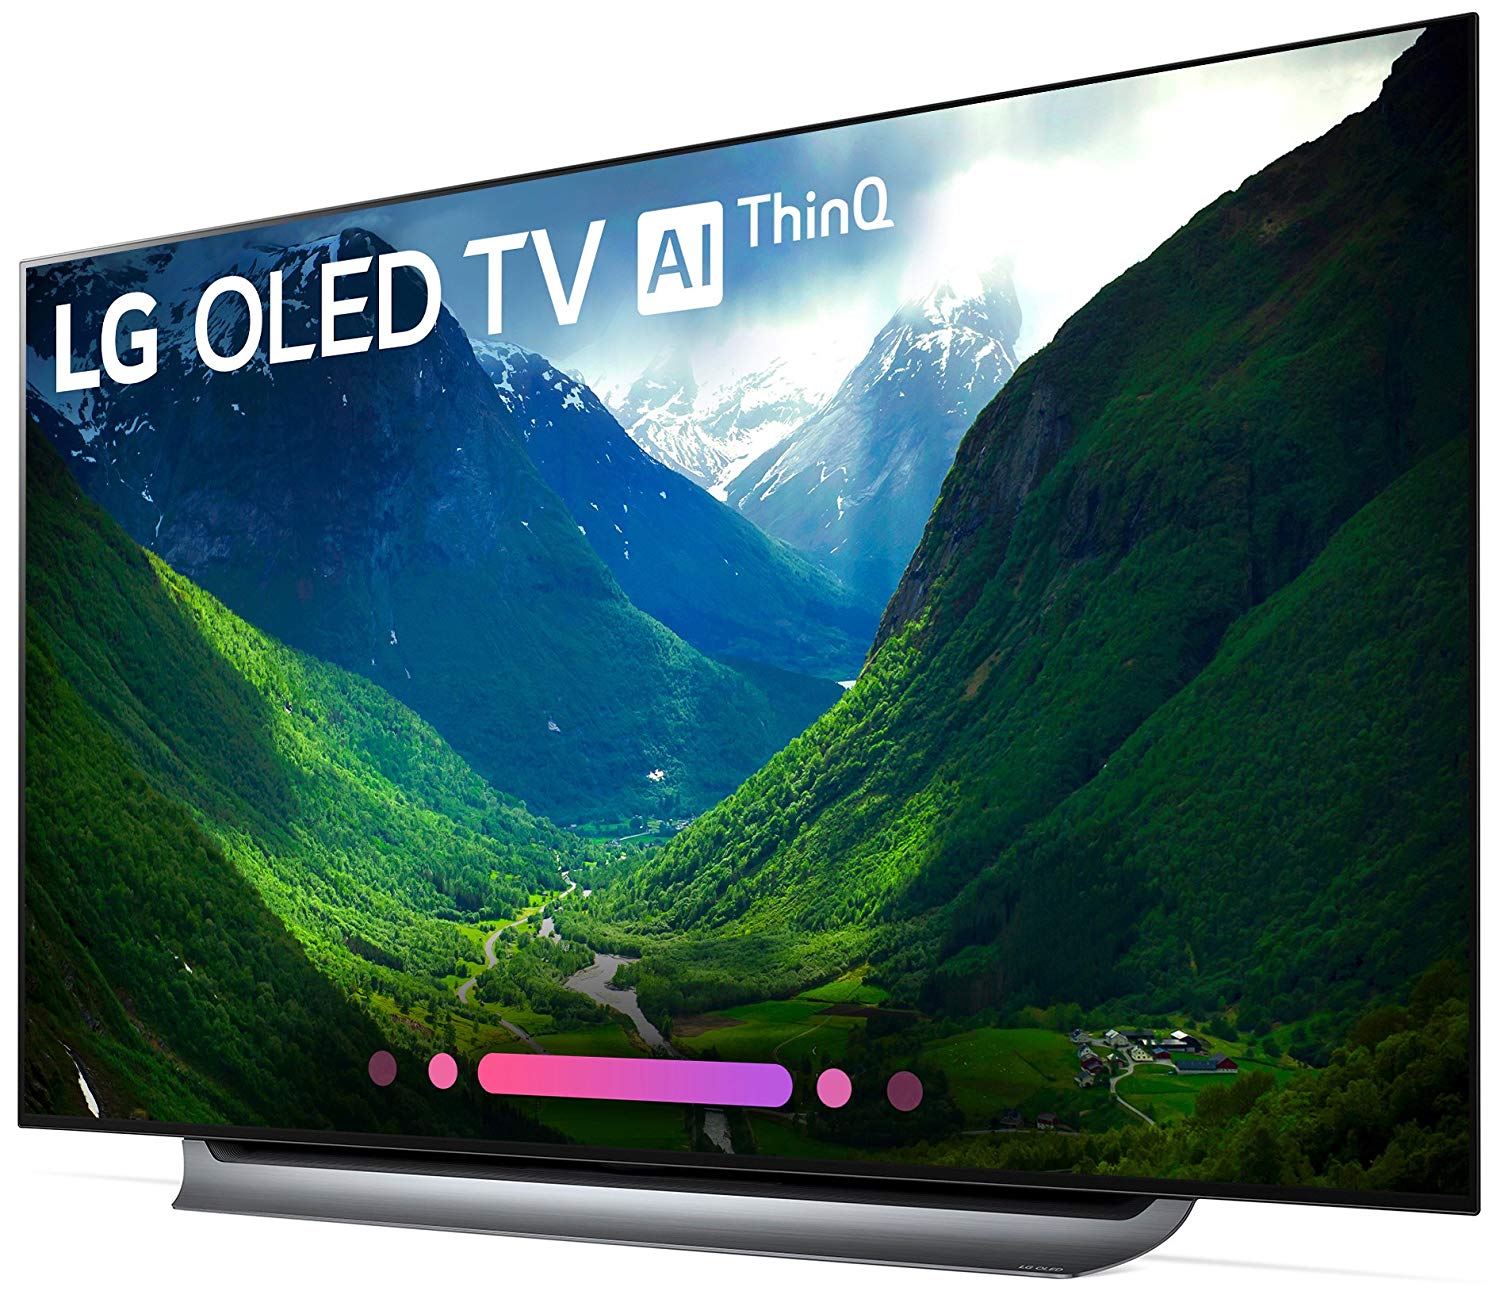 LG OLED65C8PUA 65-Inch 4K Ultra HD Smart OLED TV (2018 Model)